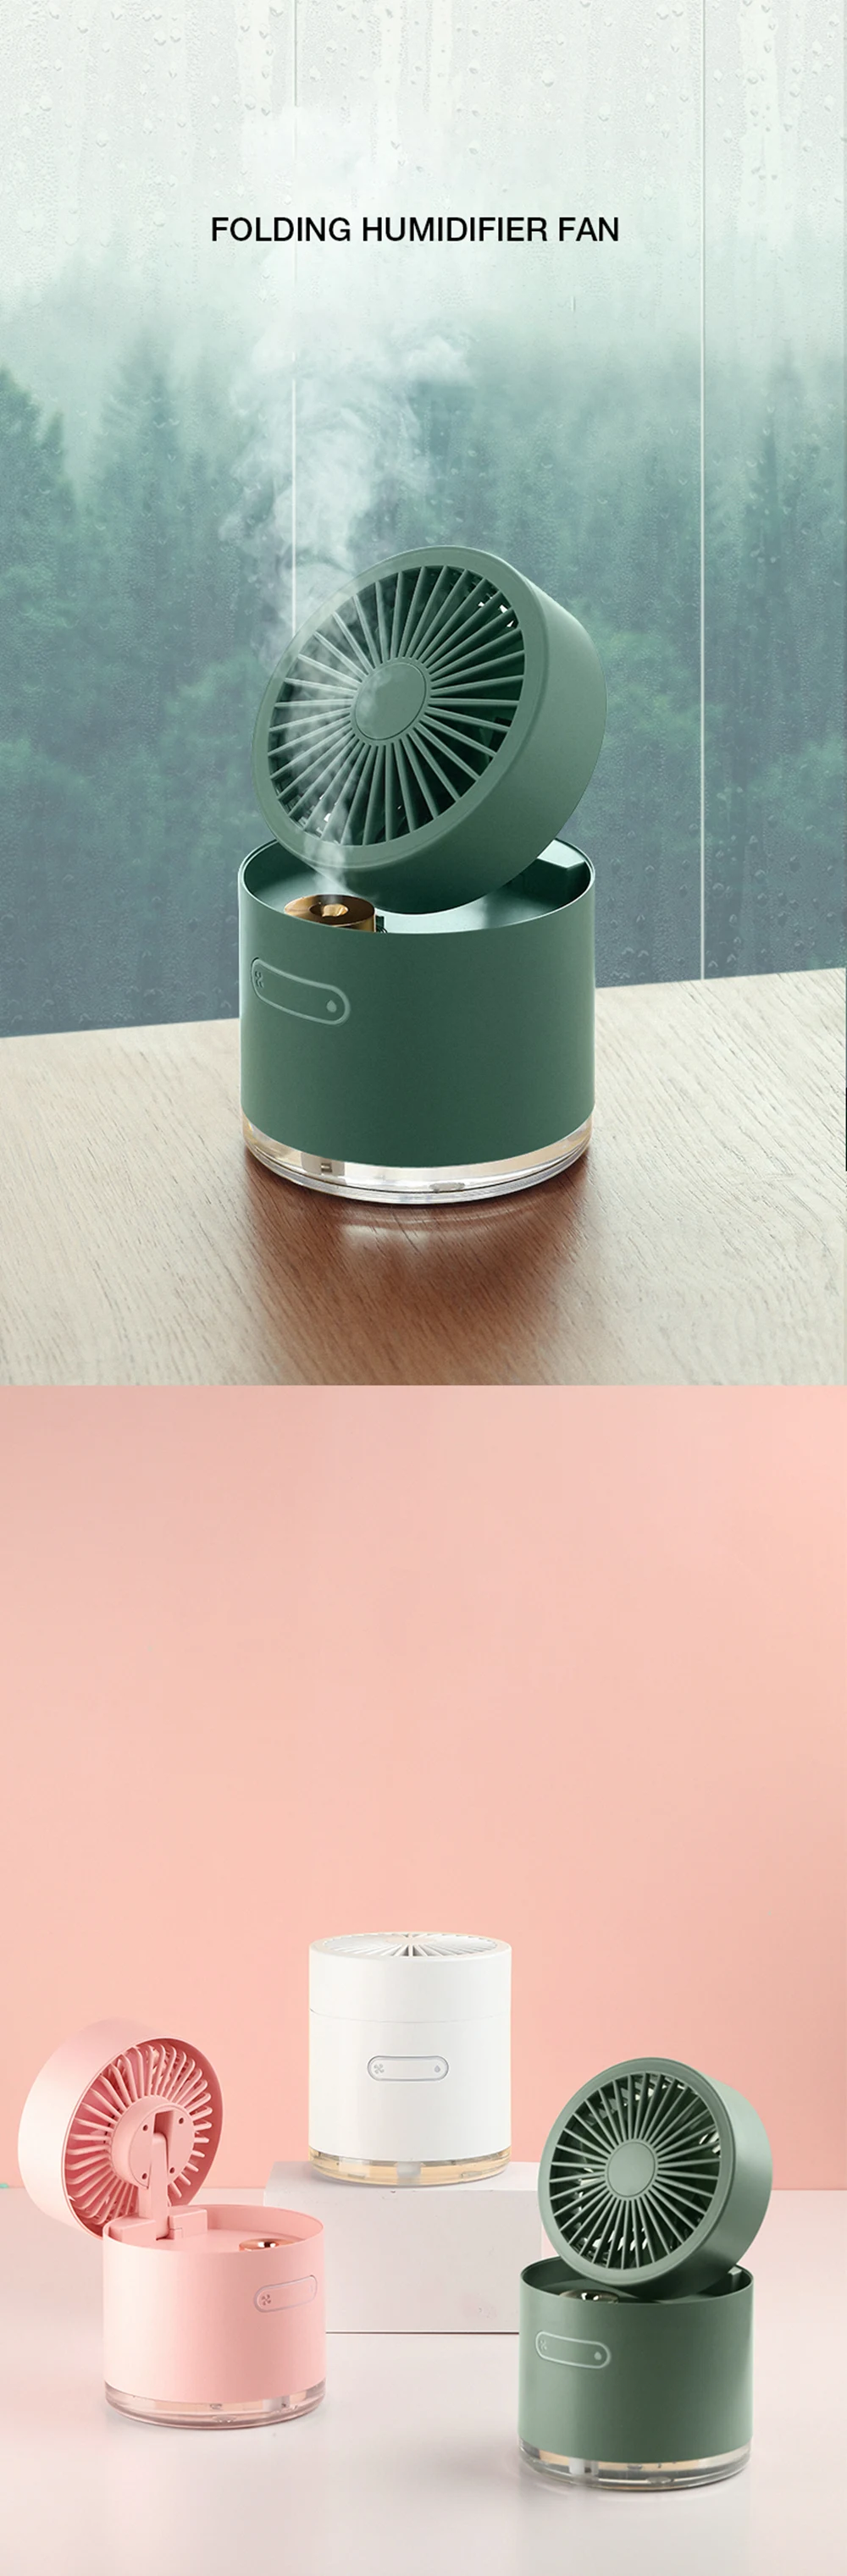 CNON Non-blade Fan Portable USB Humidifier Mini Vaporization 